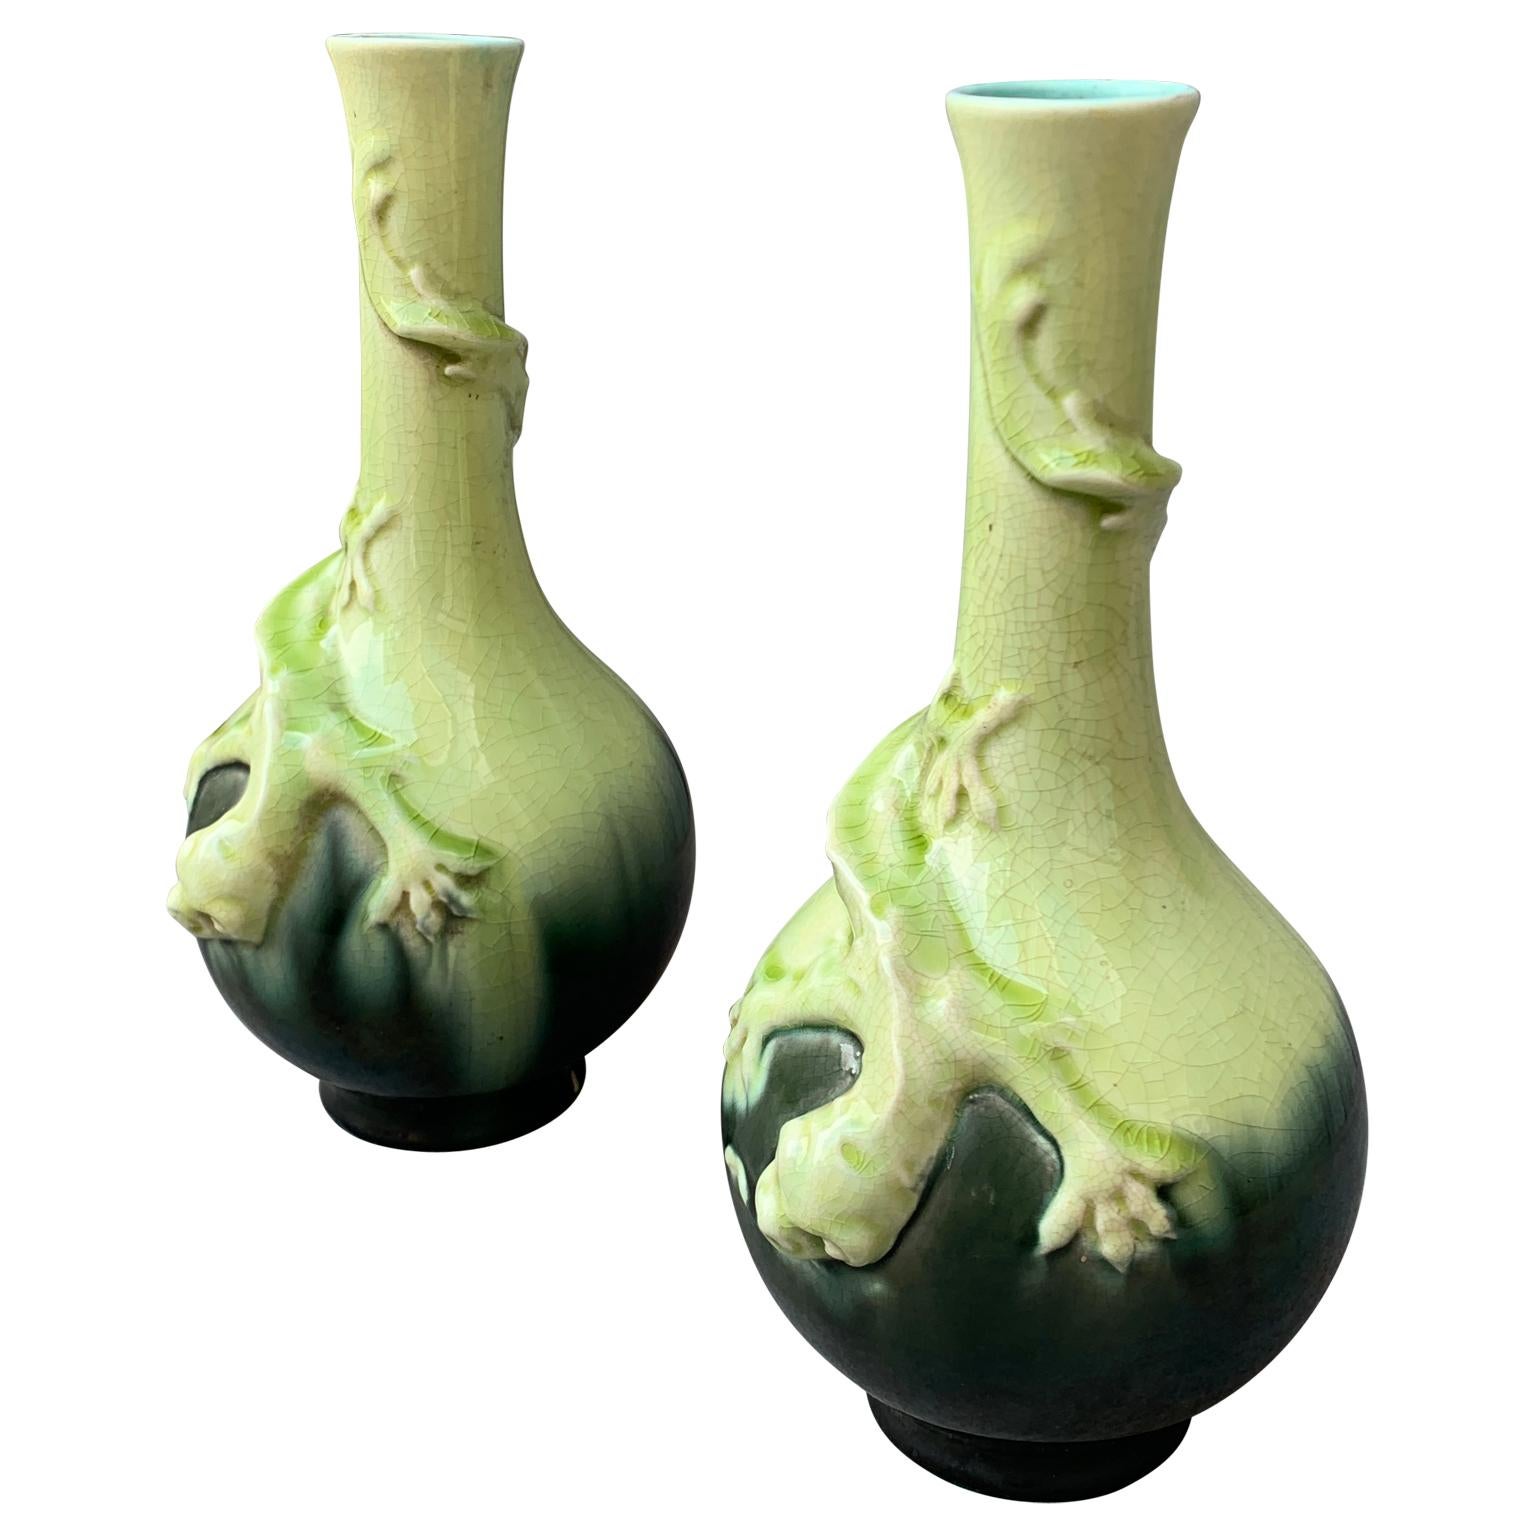 Paire de vases suédois de style Liberty du XIXe siècle. La manufacture de porcelaine de Rörstrand, en Suède, a commencé à produire au 18e siècle. Cette paire de vases à fleurs en porcelaine majolique scandinave est décorée d'un lézard chassant un